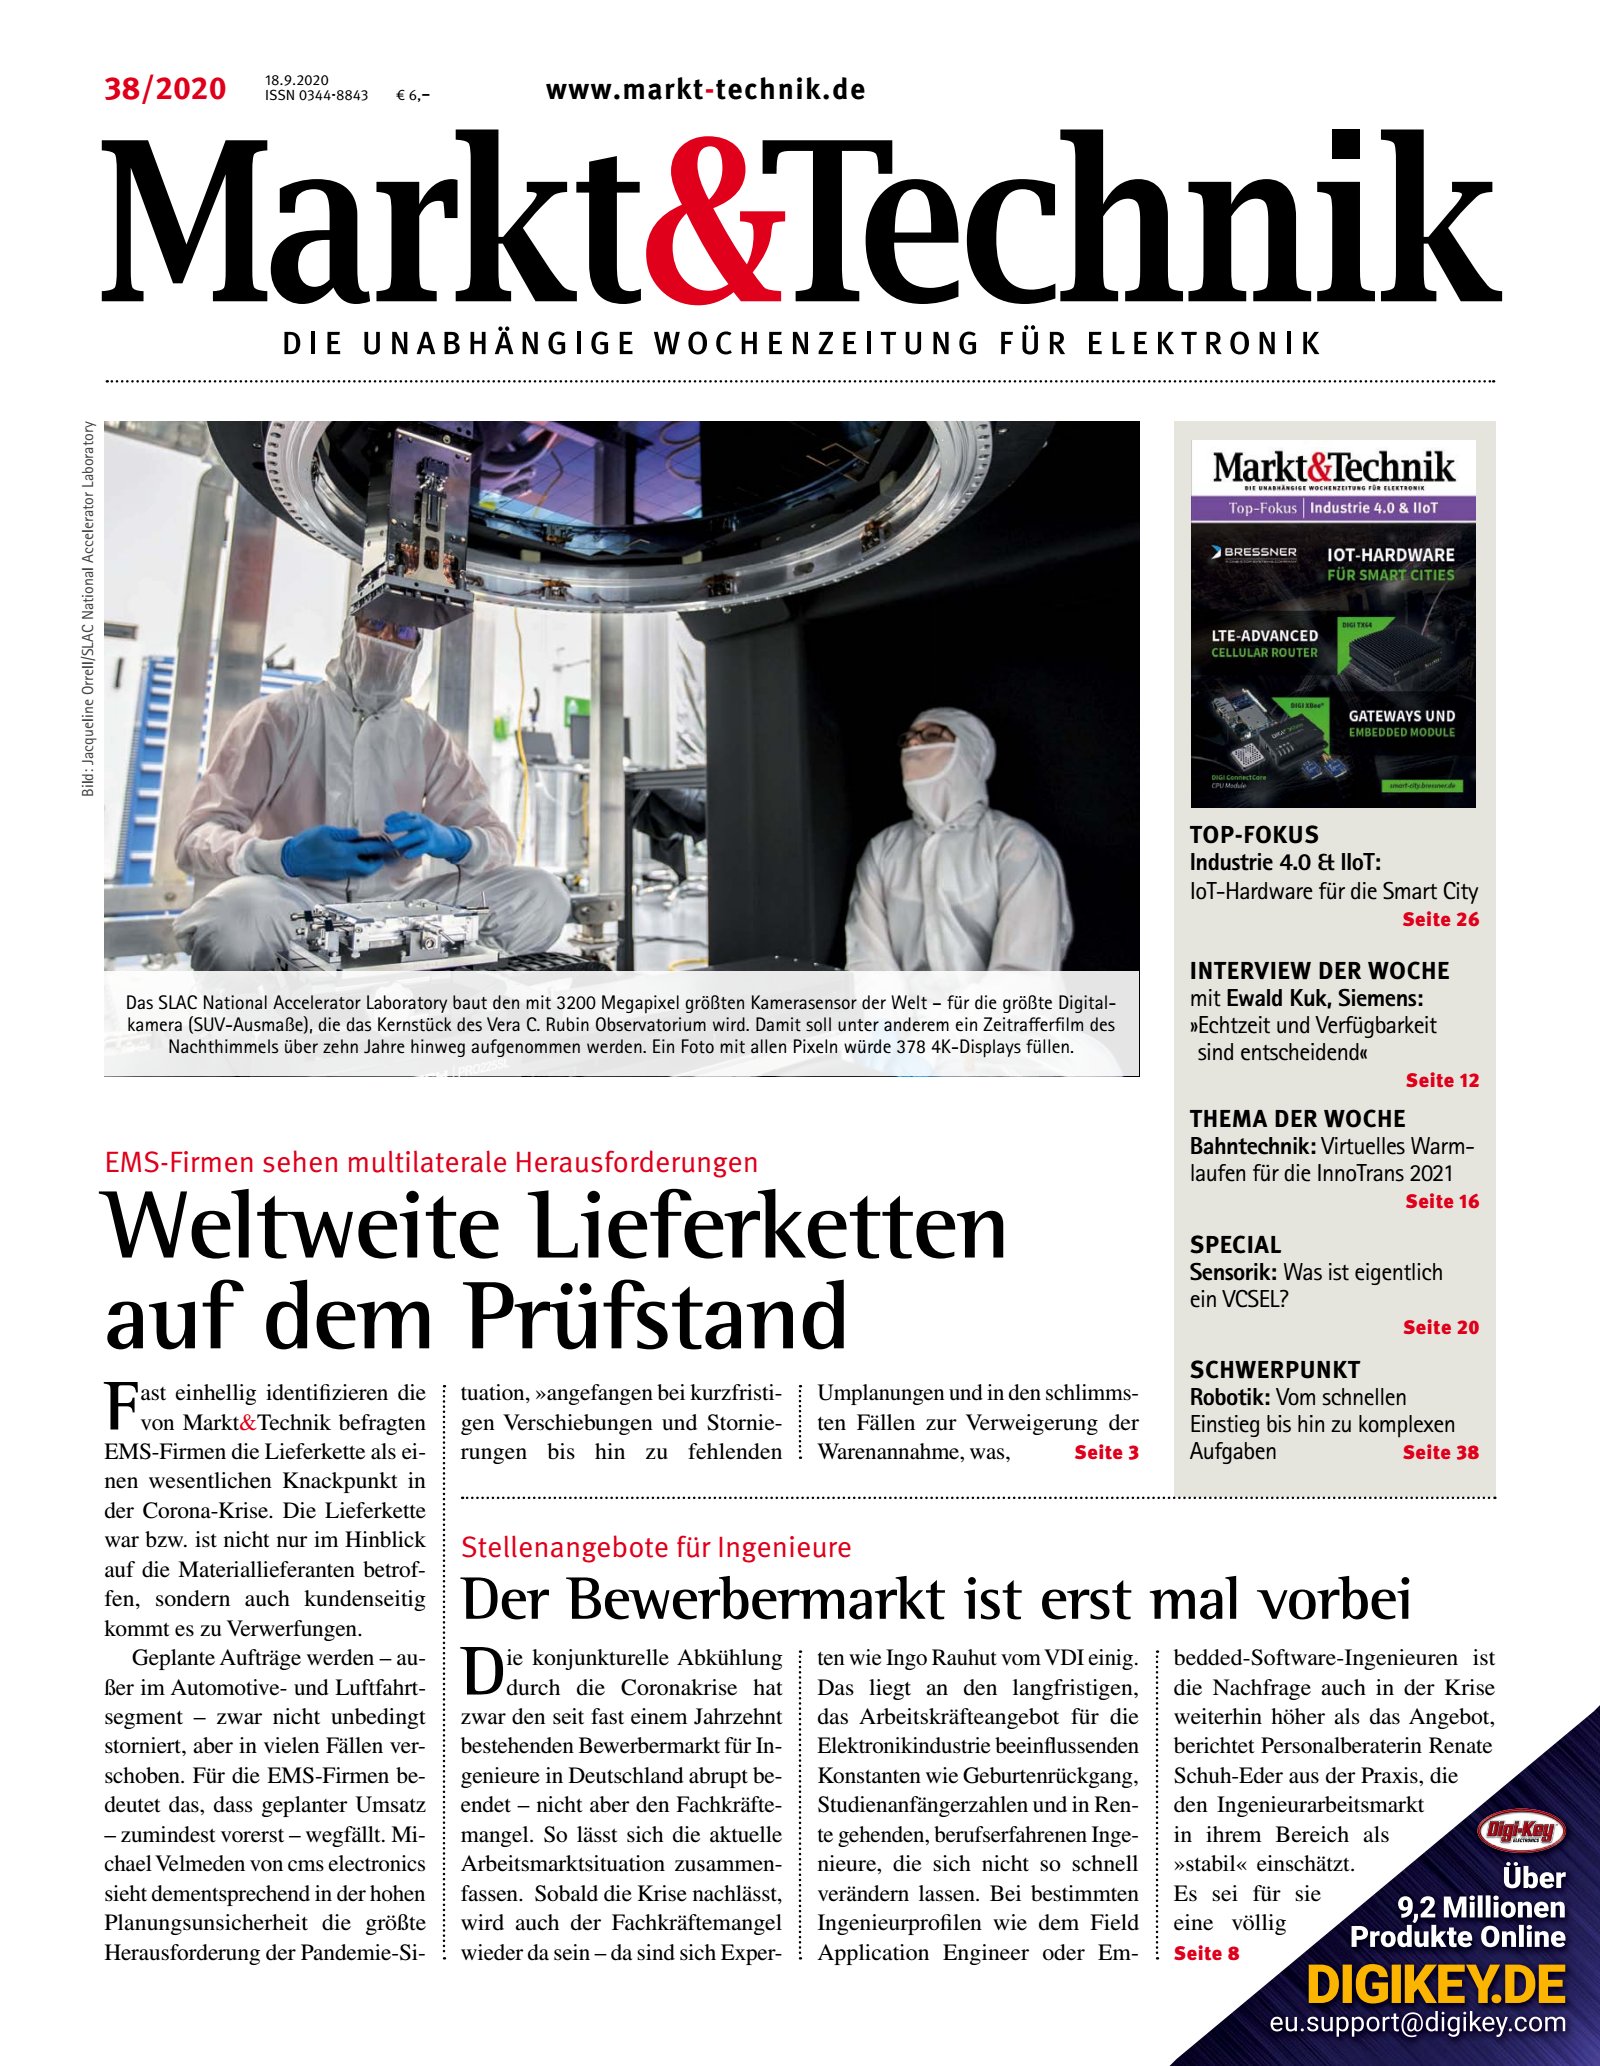 Markt&Technik 38/2020 Digital